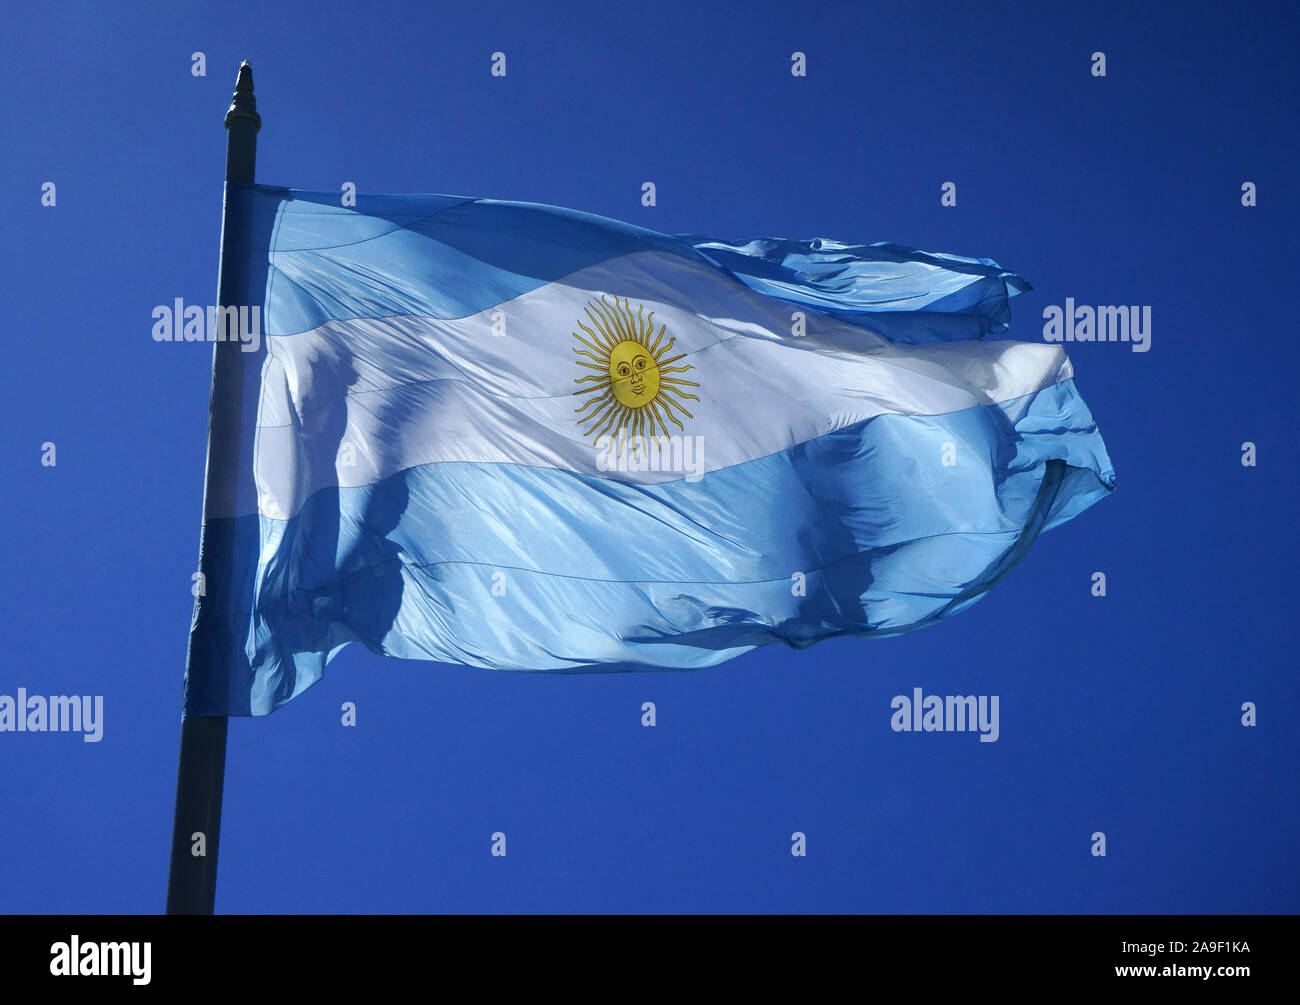 Bandera de Argentina en el viento, Plaza de Mayo, Buenos Aires, Argentina Foto de stock